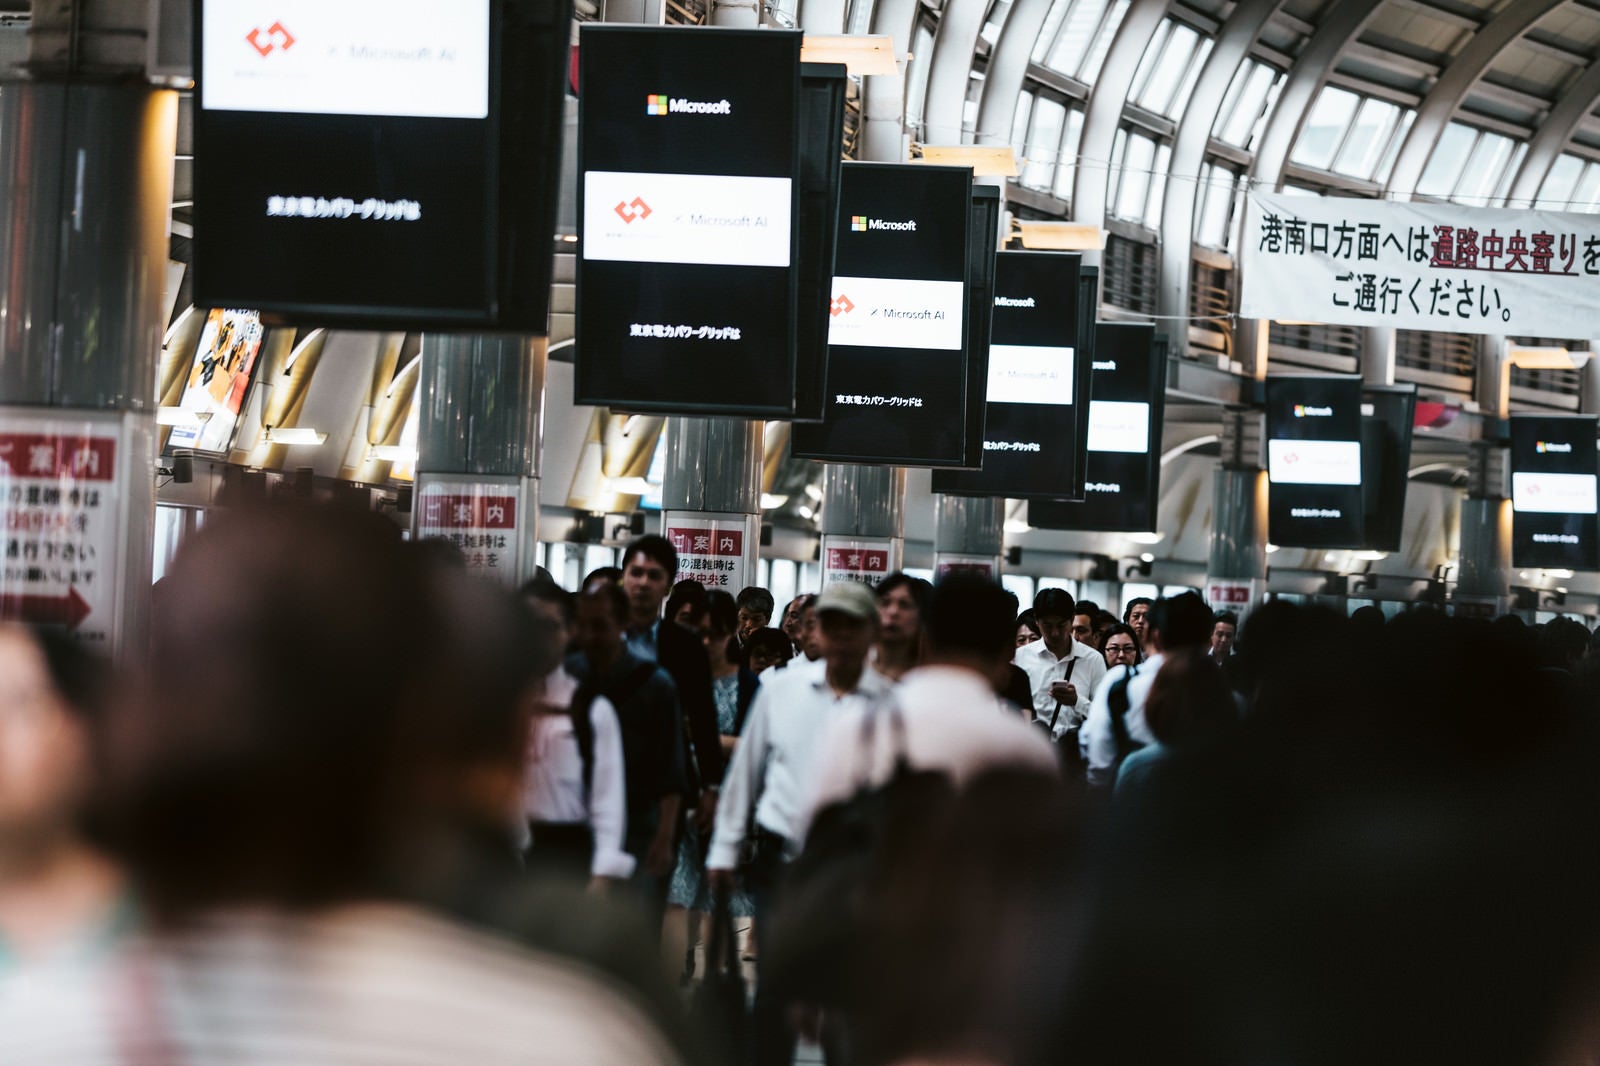 「品川駅の自由通路に並ぶディスプレイ」の写真